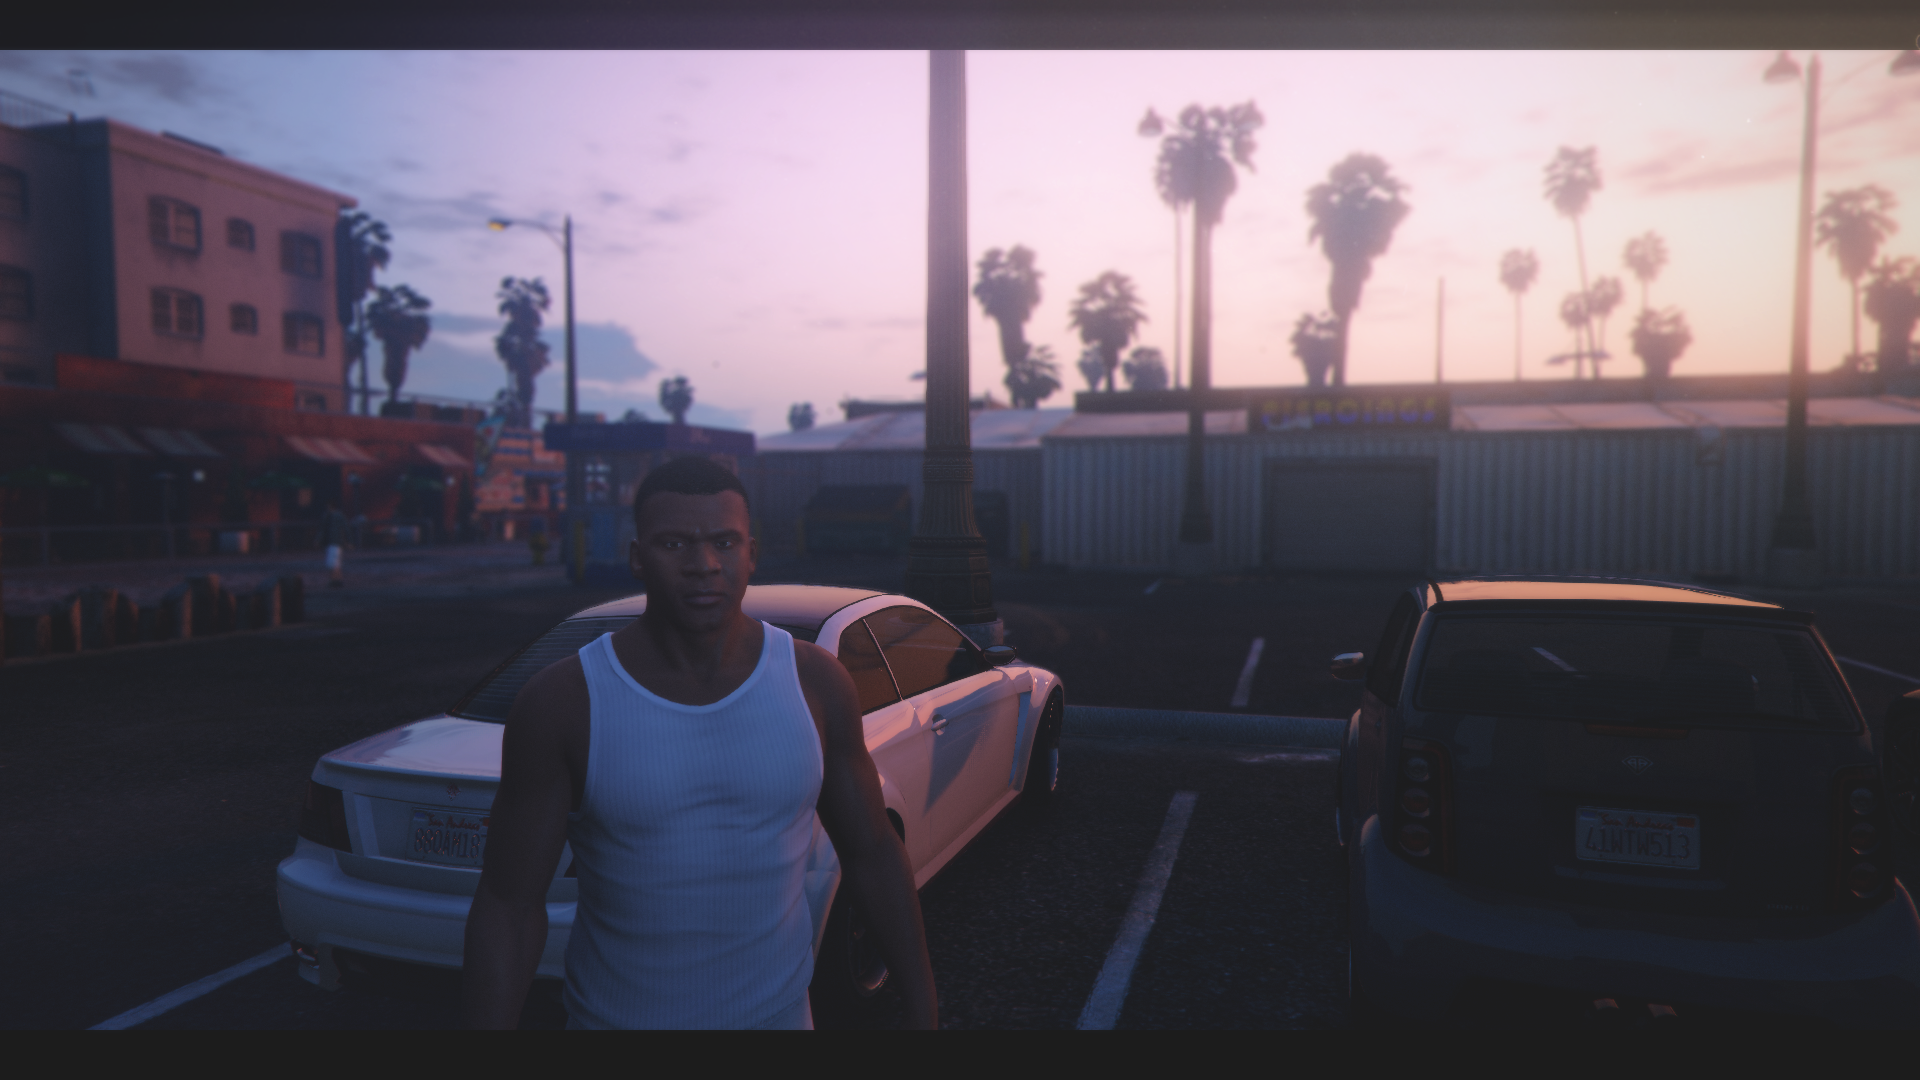 Screenshot - GTA V: Filmic Presets - Final (Grand Theft Auto V)